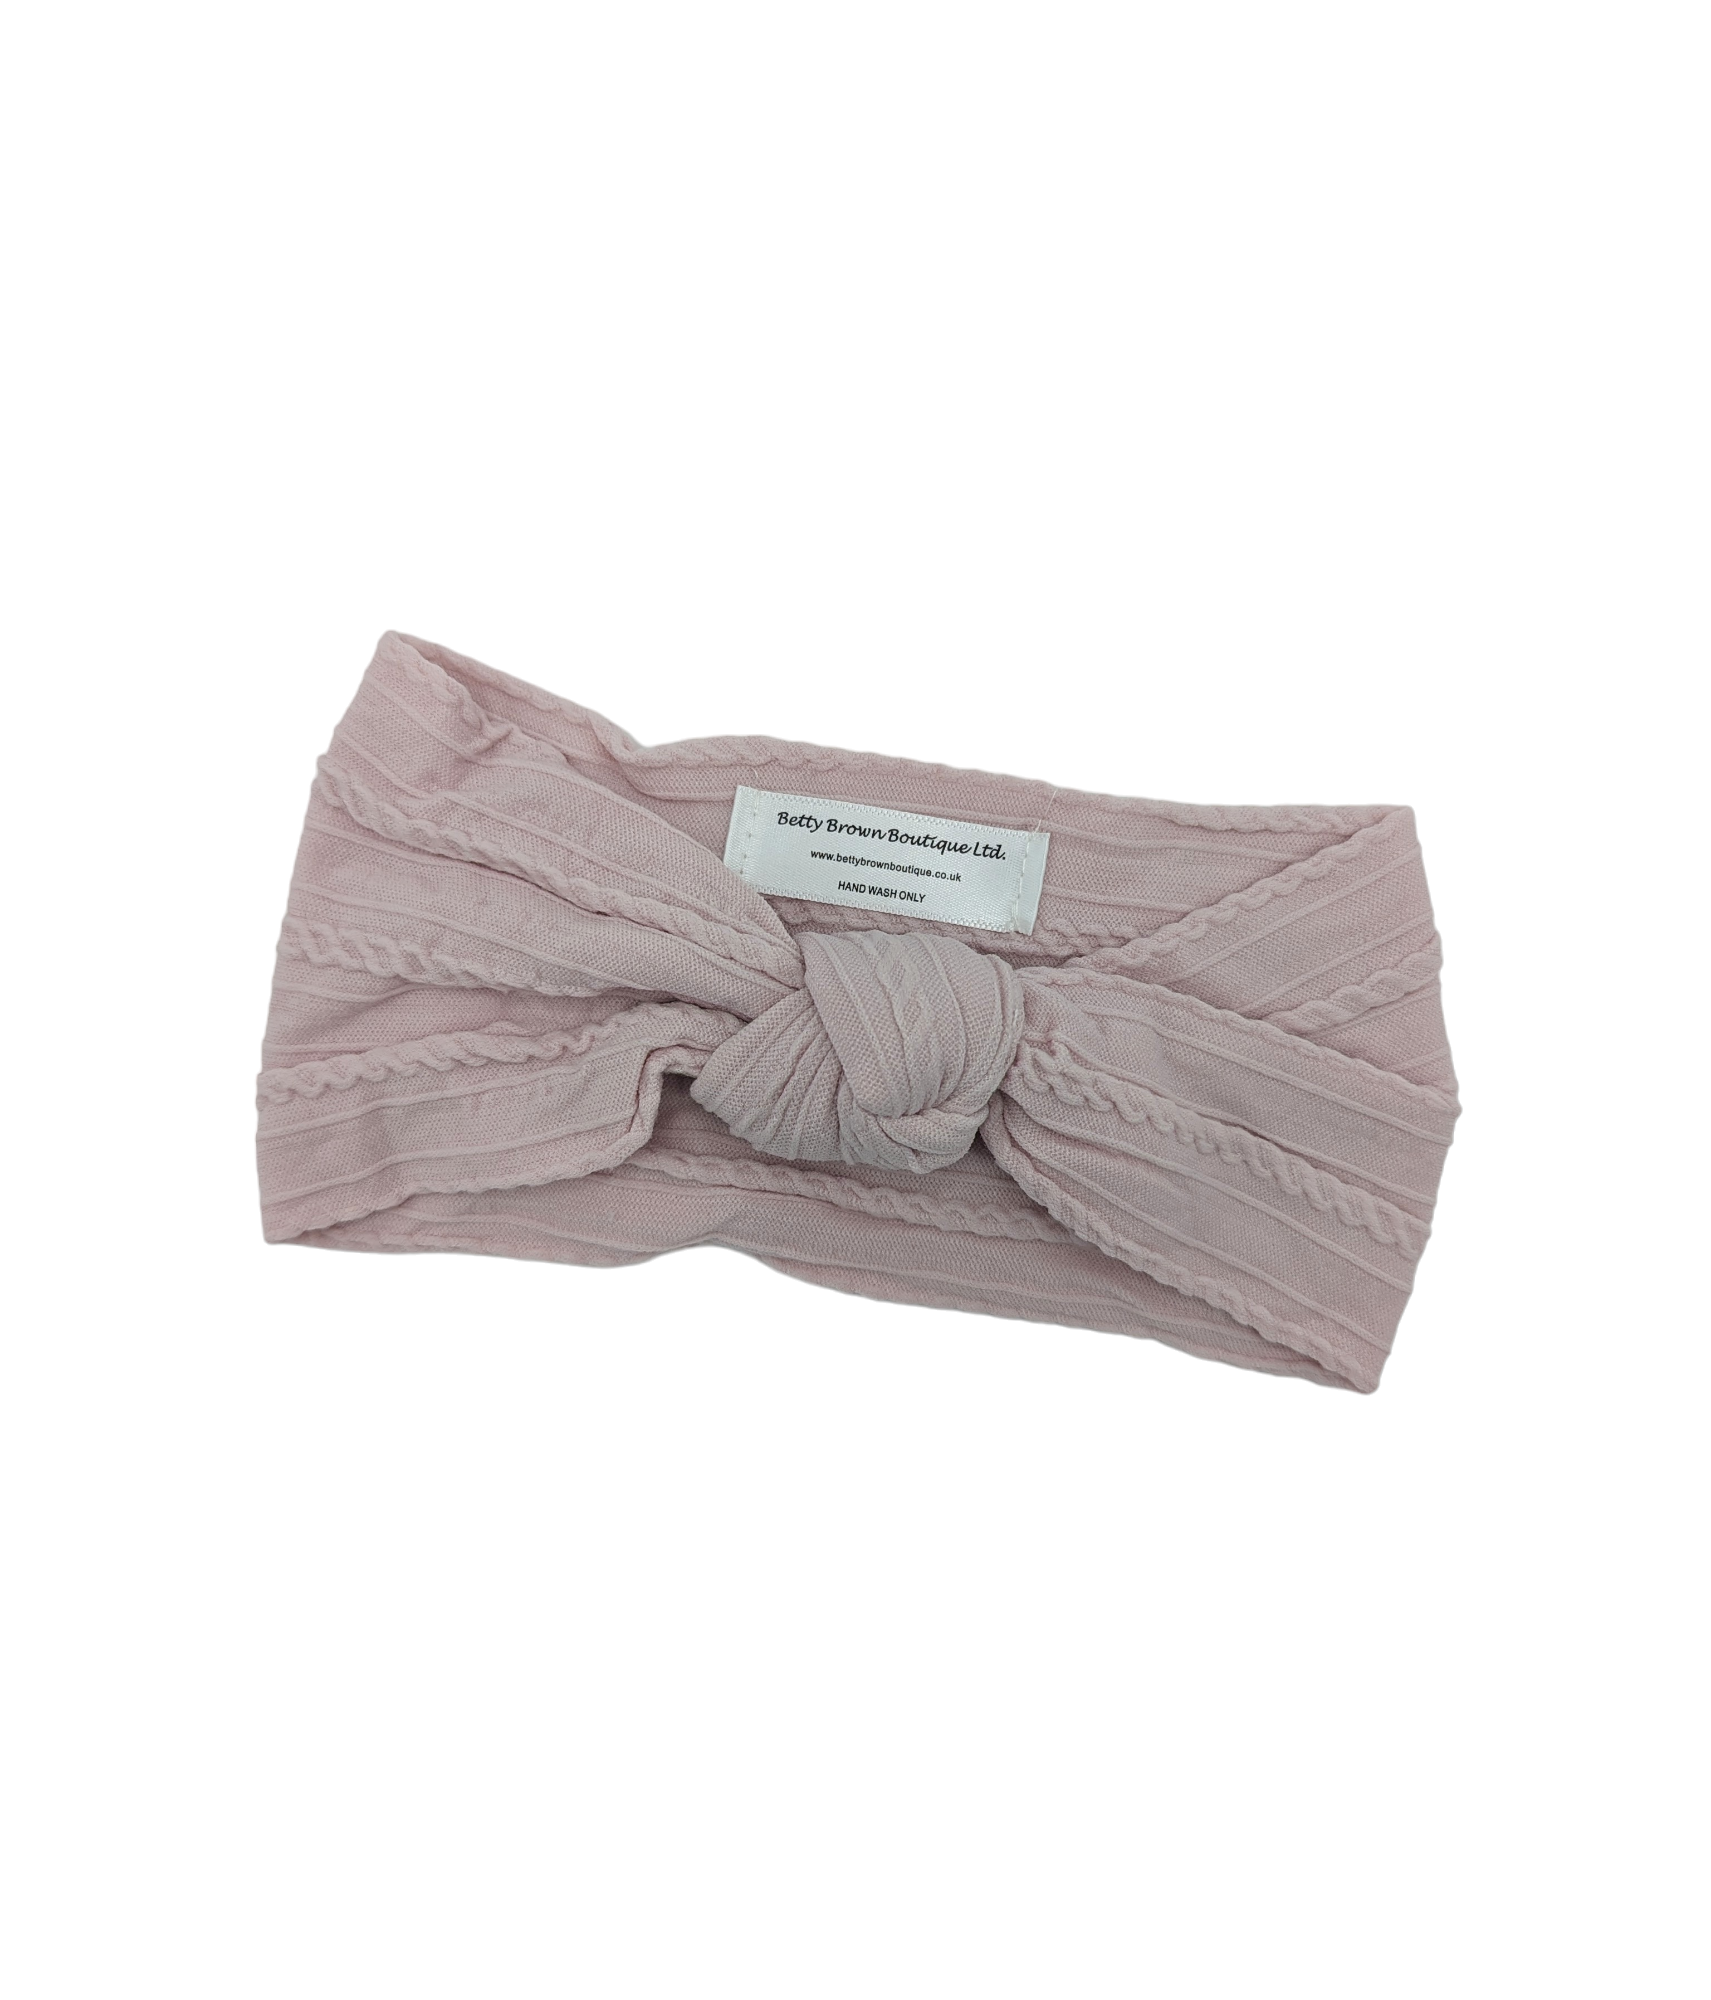 Pale Mauve Cable Knit Knot Headwrap - Betty Brown Boutique Ltd